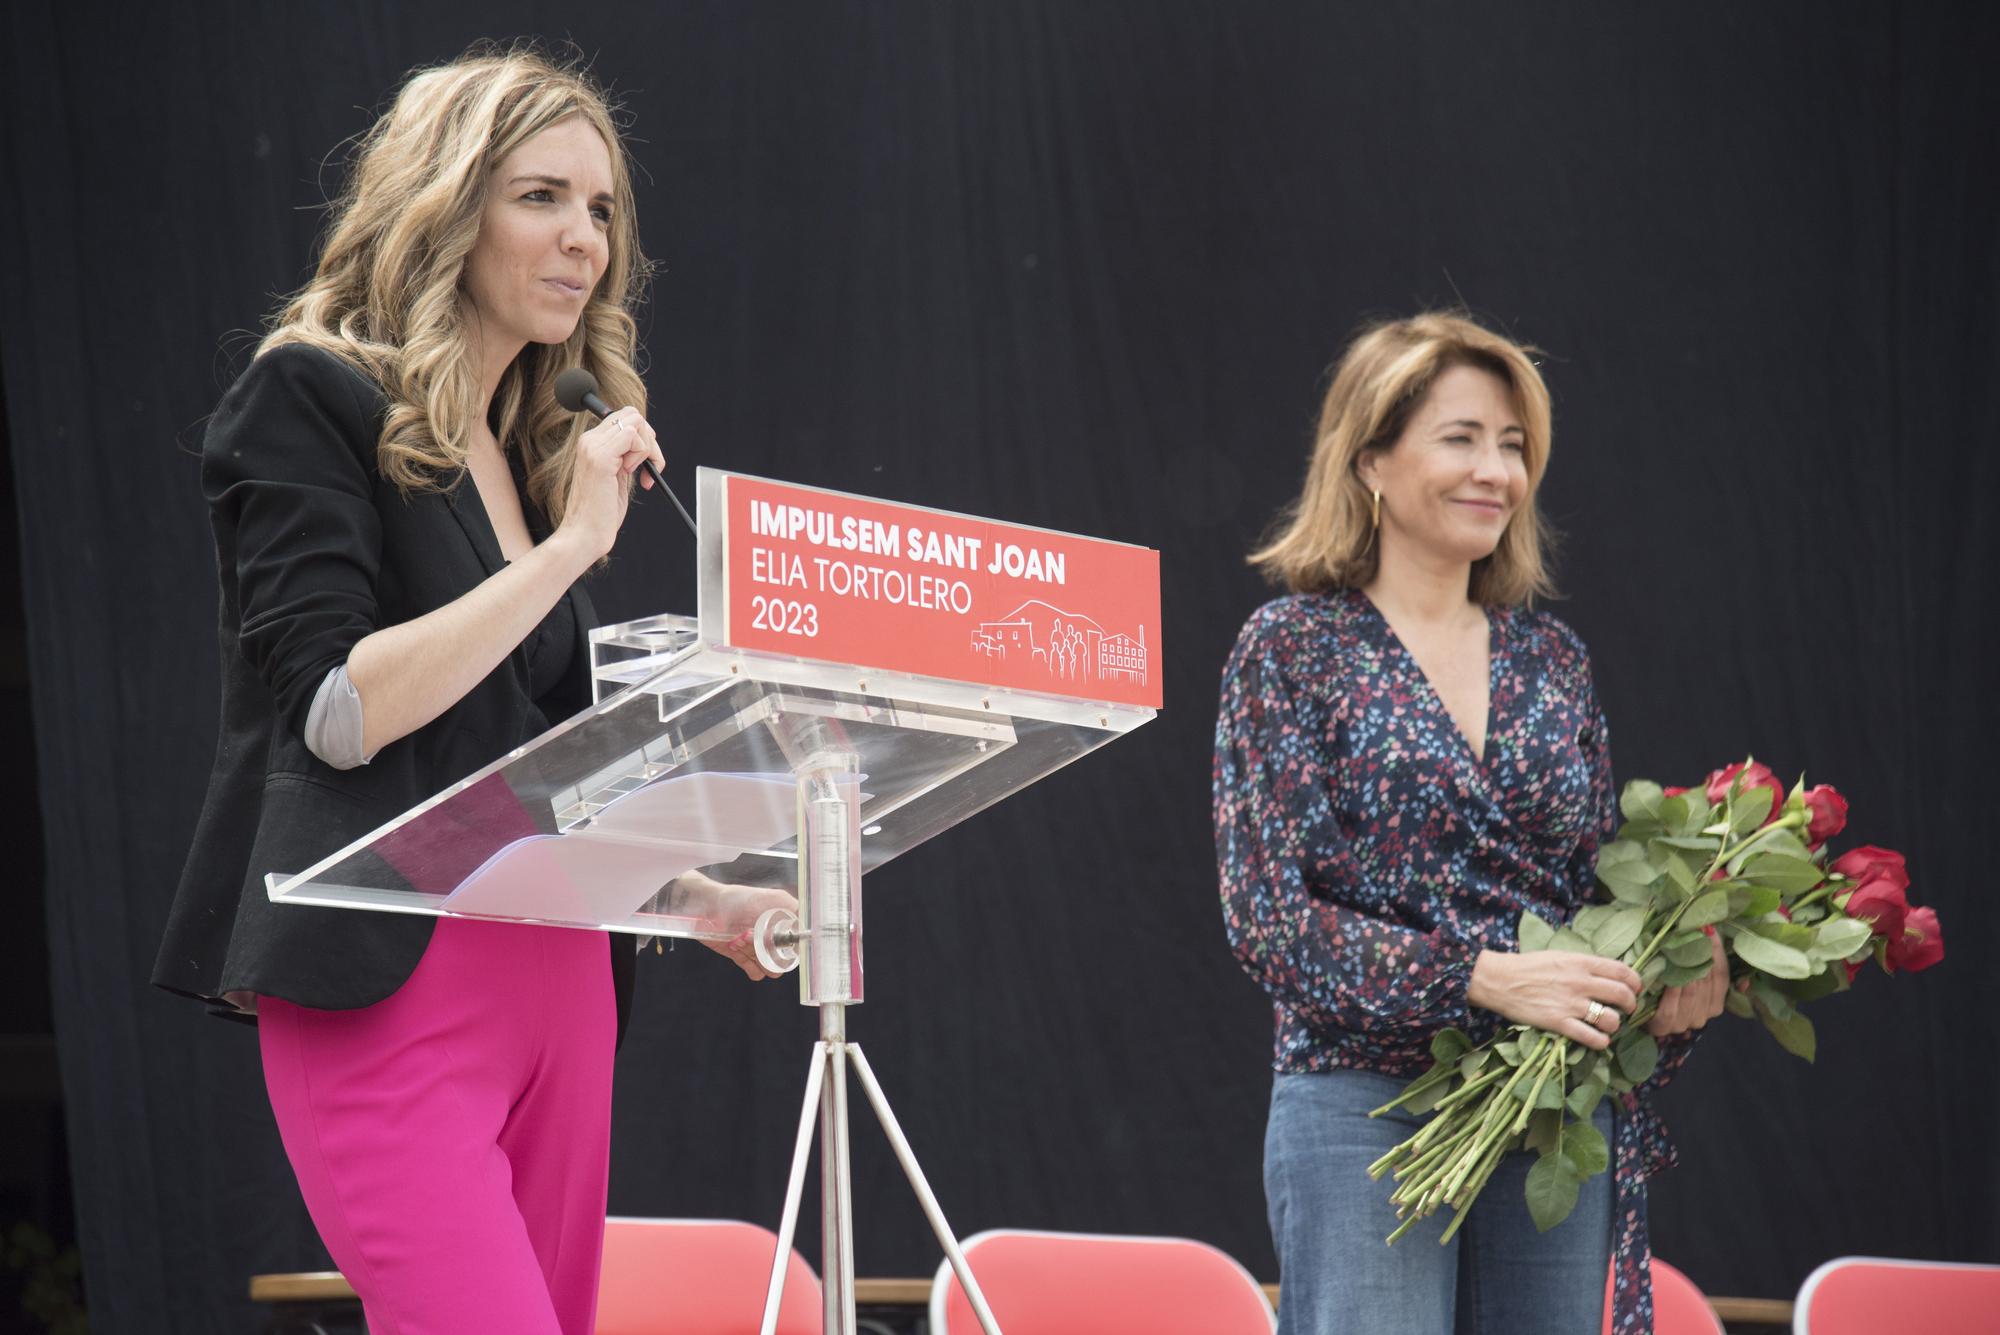 La ministra Sánchez presenta la candidatura d'Èlia Tortolero a Sant Joan de Vilatorrada